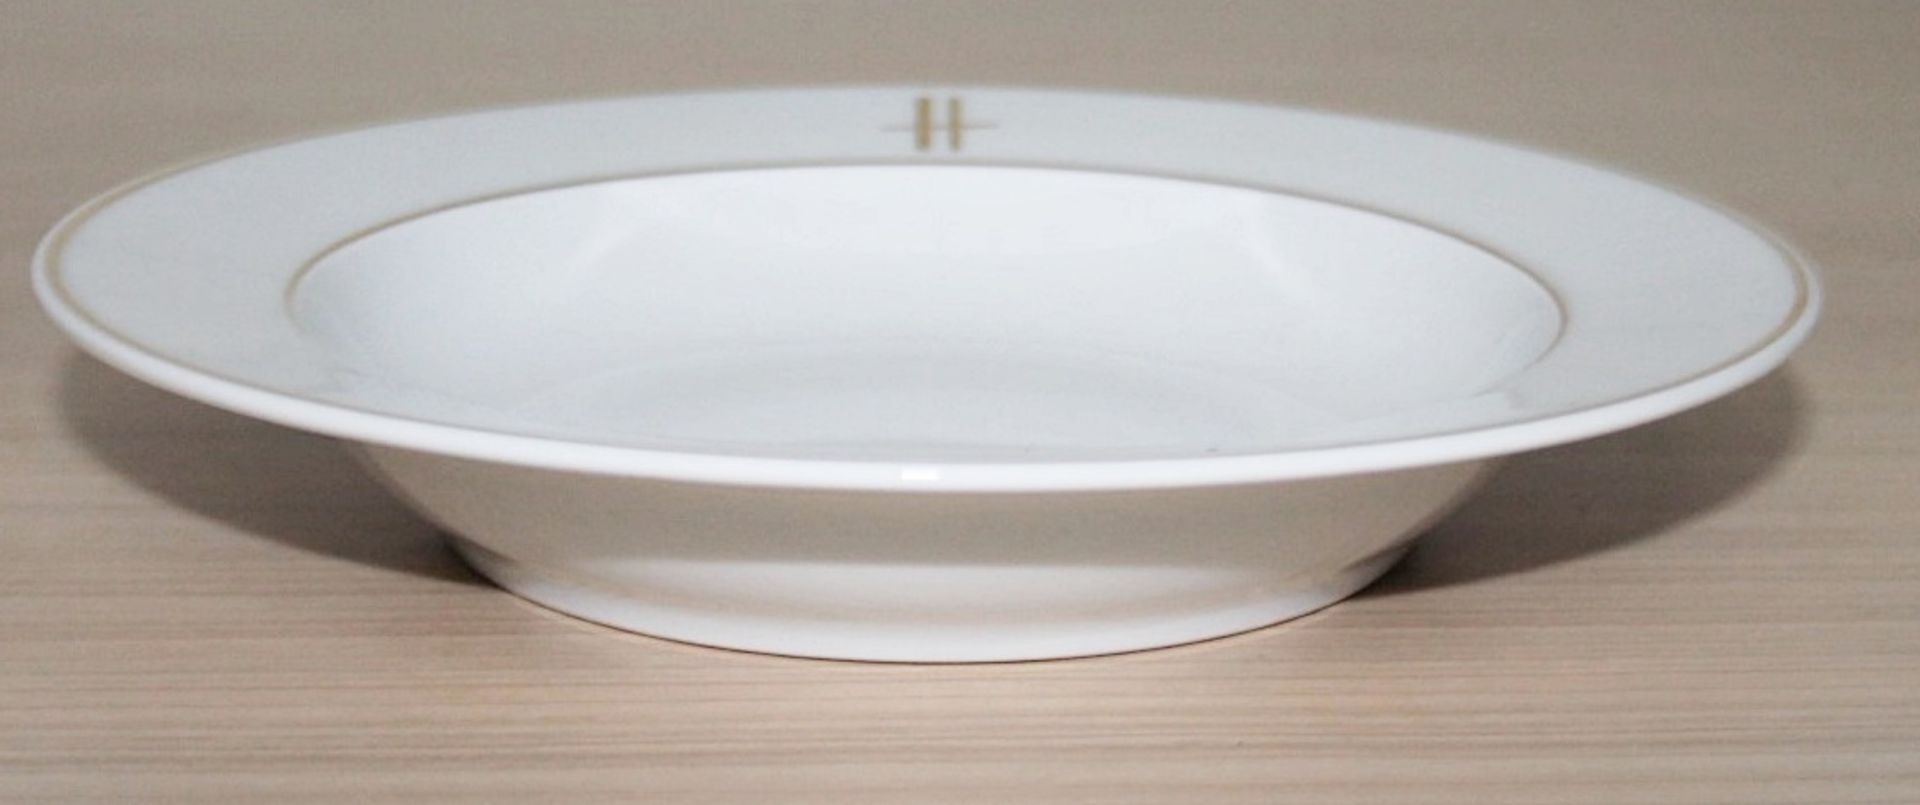 40 x PILLIVUYT Porcelain 21.7cm Small Commercial Porcelain Pasta / Soup Bowls With 'Famous Branding' - Image 6 of 6